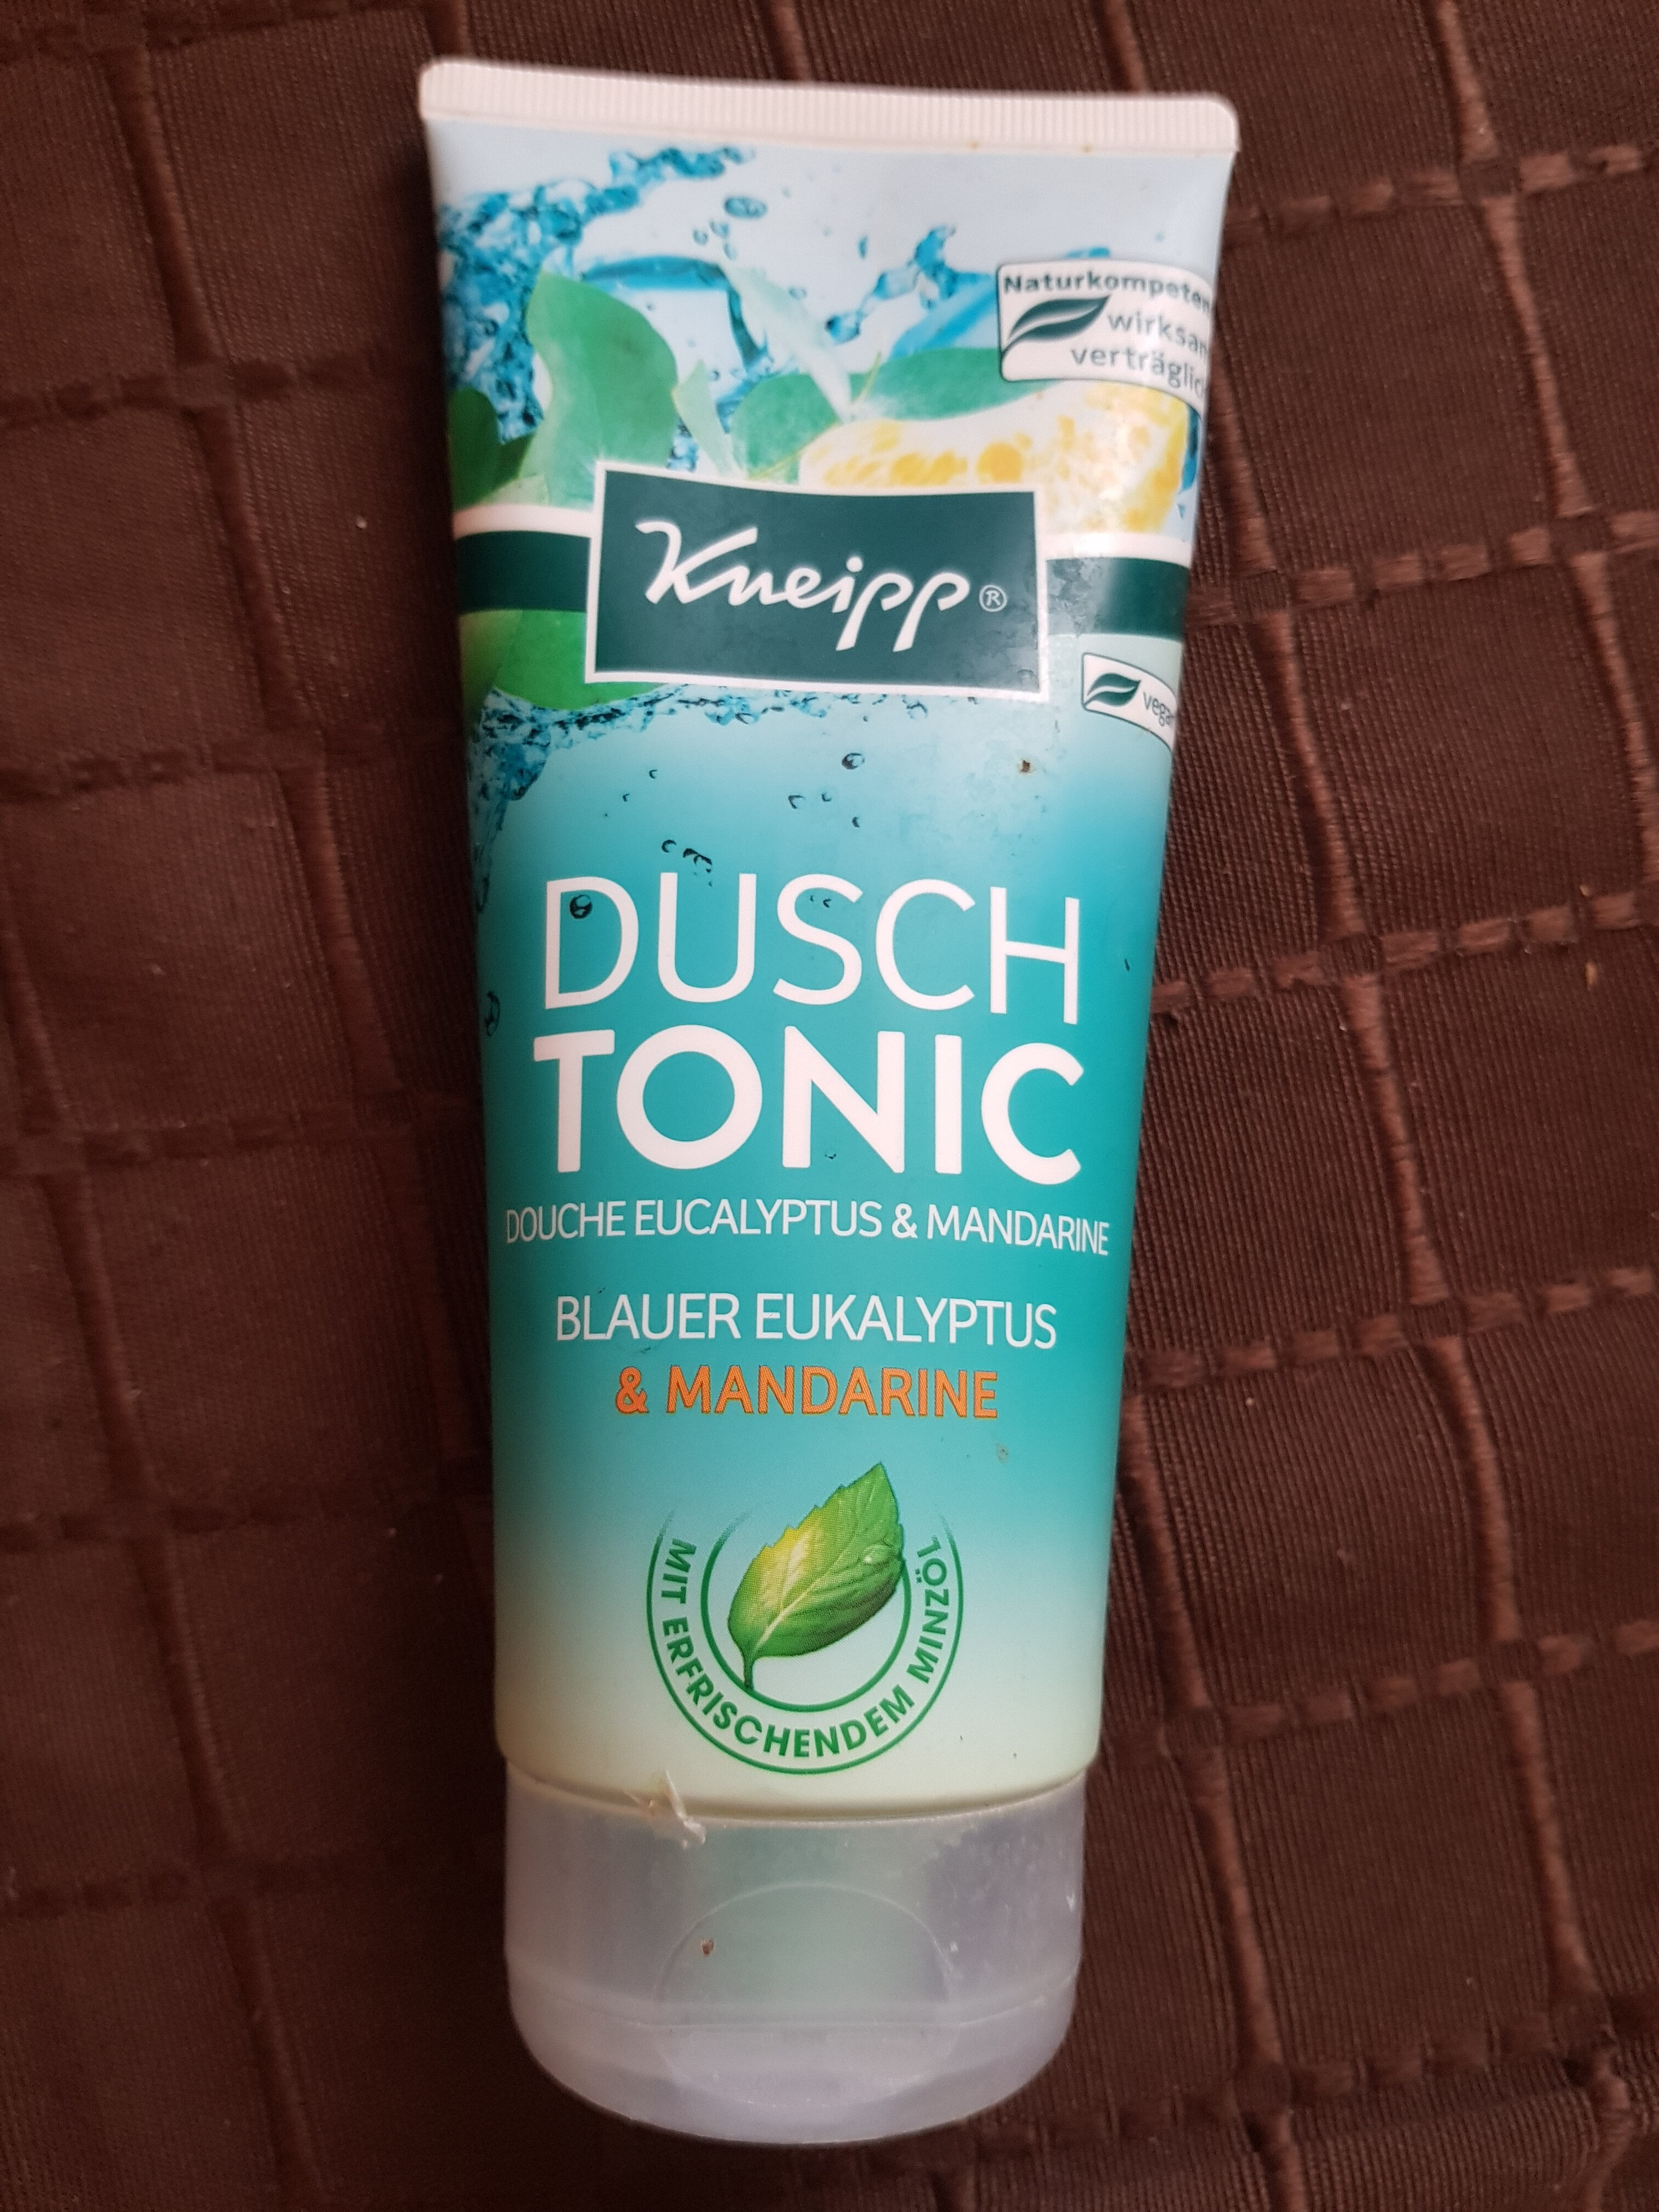 Kneipp Dusch Tonic, Blauer Eukalyptus & Mandarine - Produkt - de